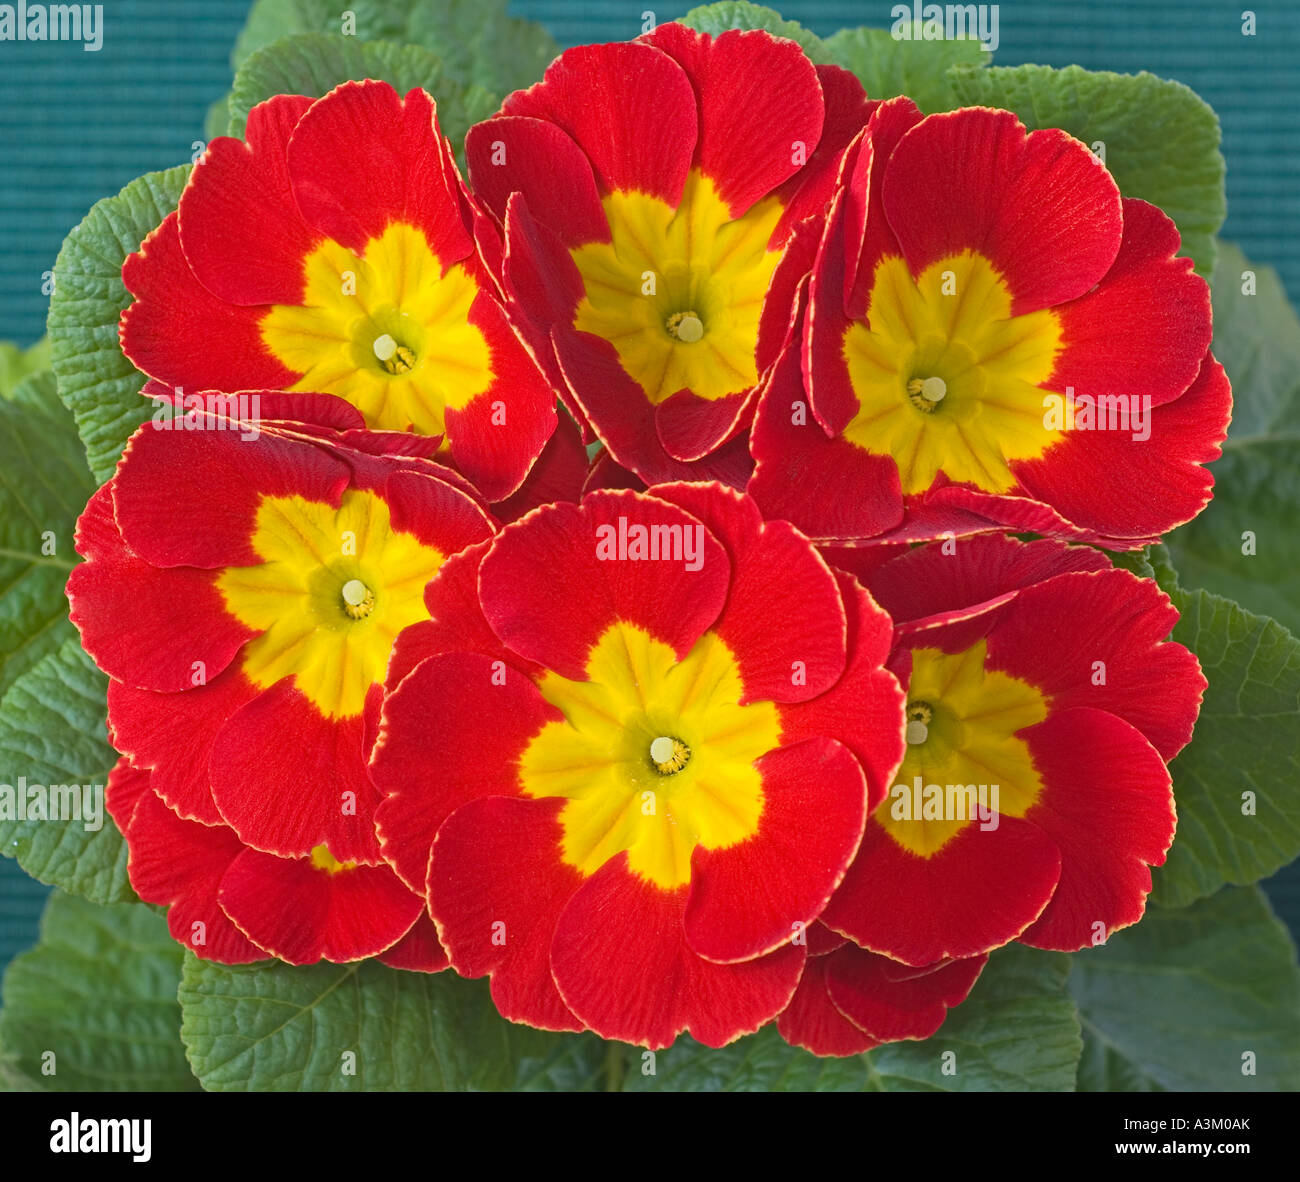 Red primroses close up Primula veris Stock Photo